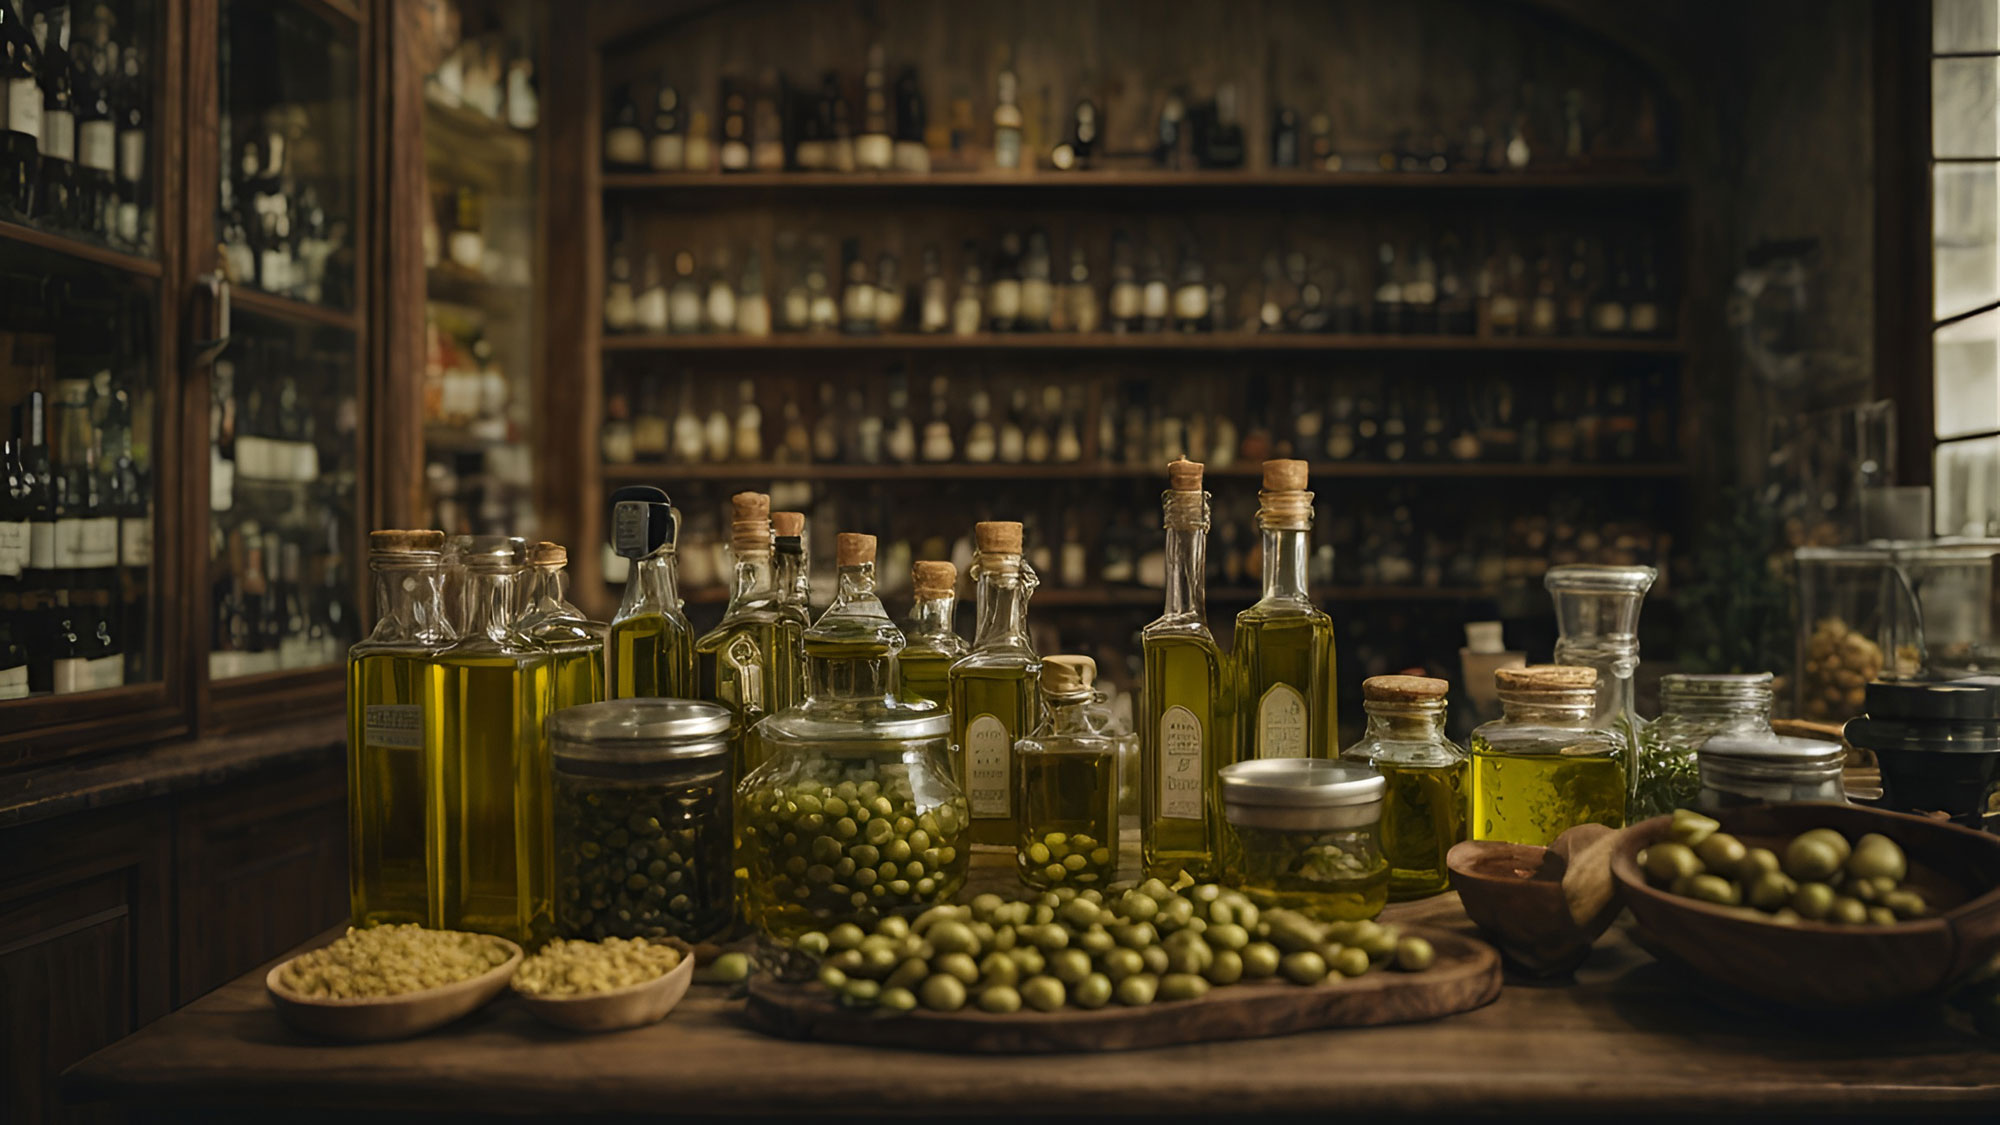 Unsere hochwertigen Olivenöle werden von Händlern angeboten, die Wert auf Nachhaltigkeit und Qualität legen. Genießen Sie mit unseren Olivenölen das Beste aus der mediterranen Küche.